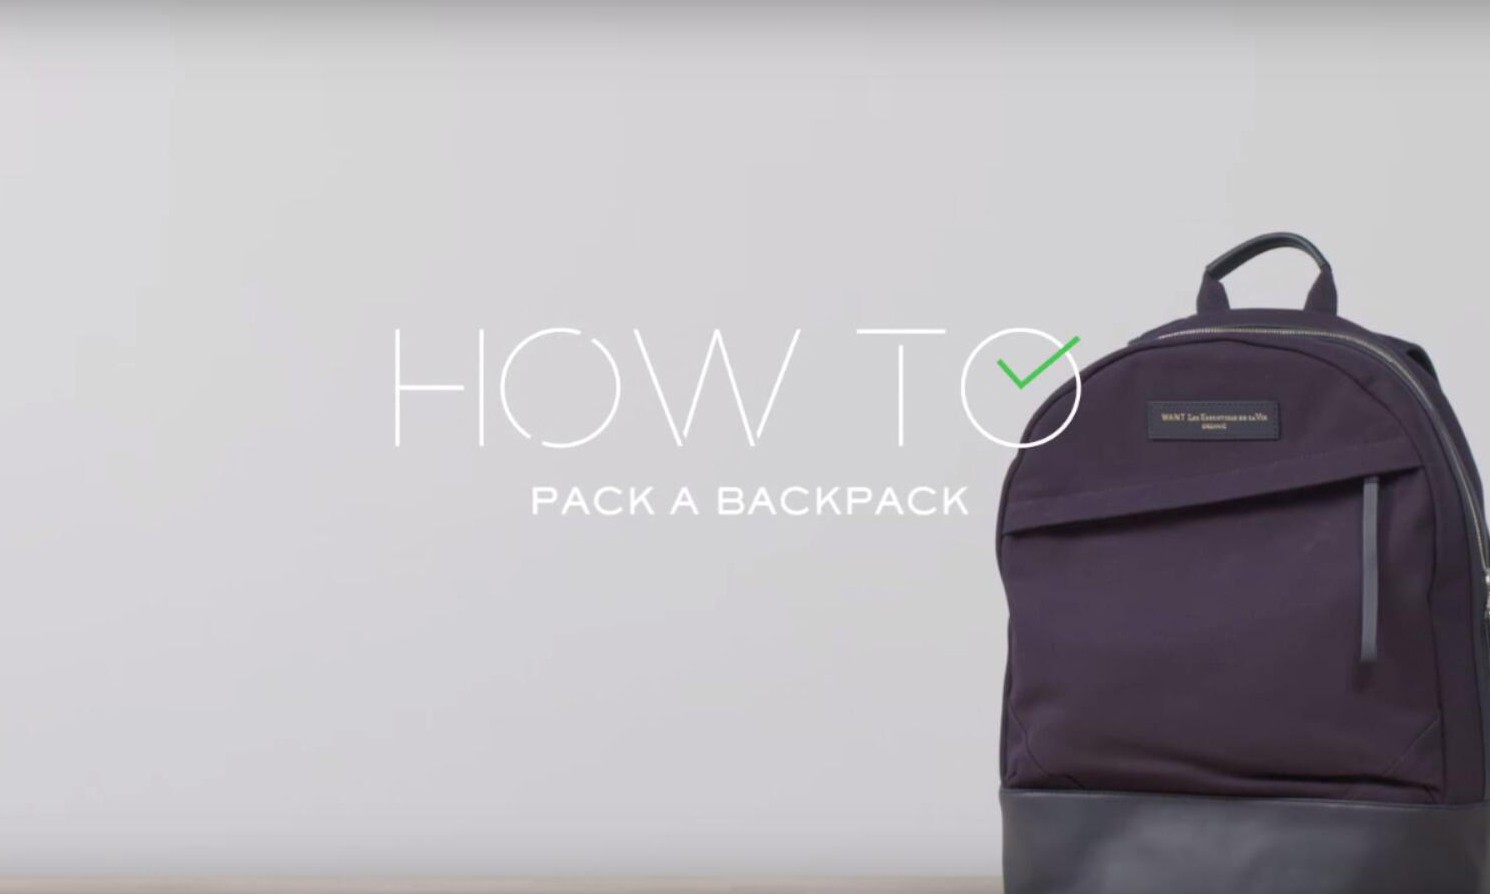 简易打包教程，MR PORTER 出品《How To Pack A Backpack》短片